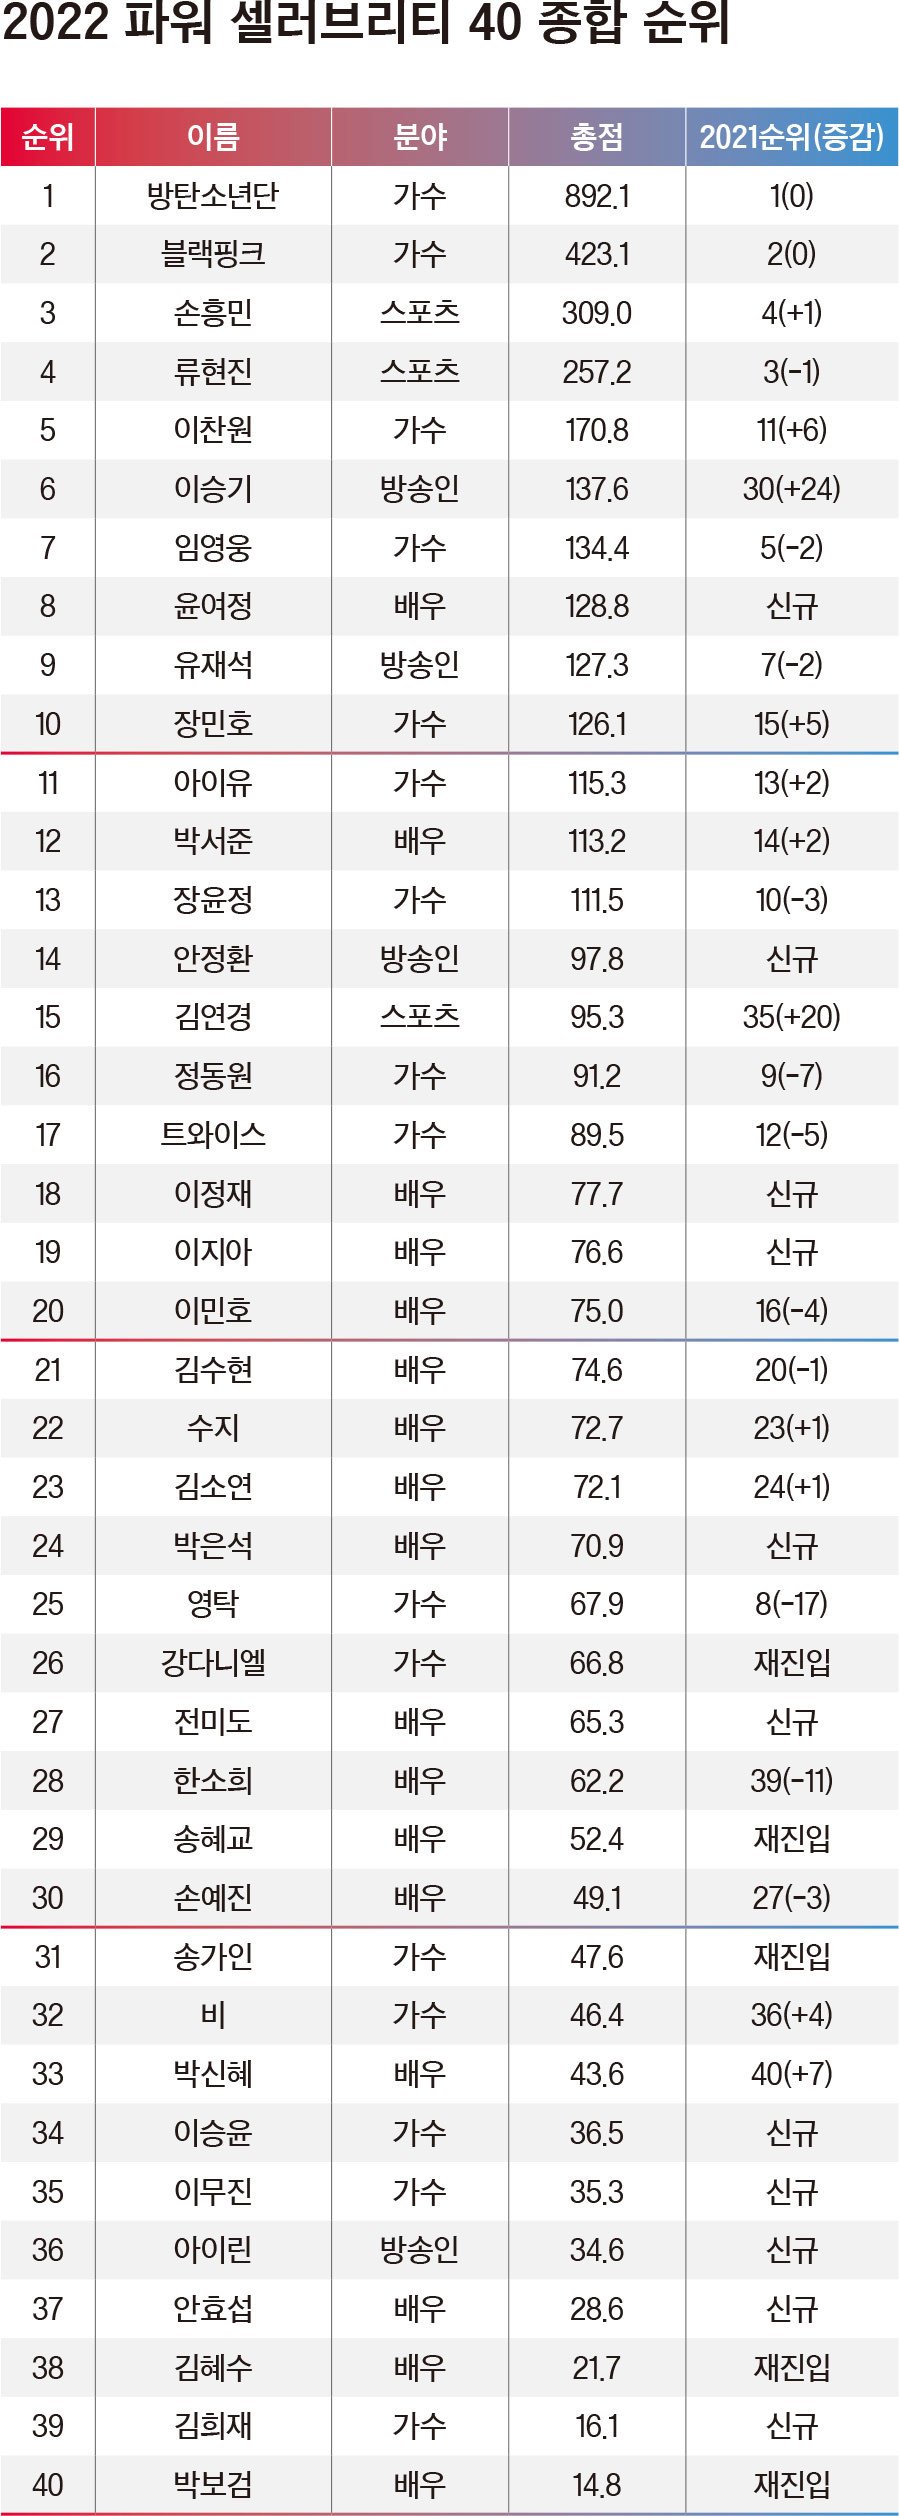 BTS, BLACKPINK и Сон Хын Мин возглавили список Forbes Korea «Самые влиятельные знаменитости 2022 года»